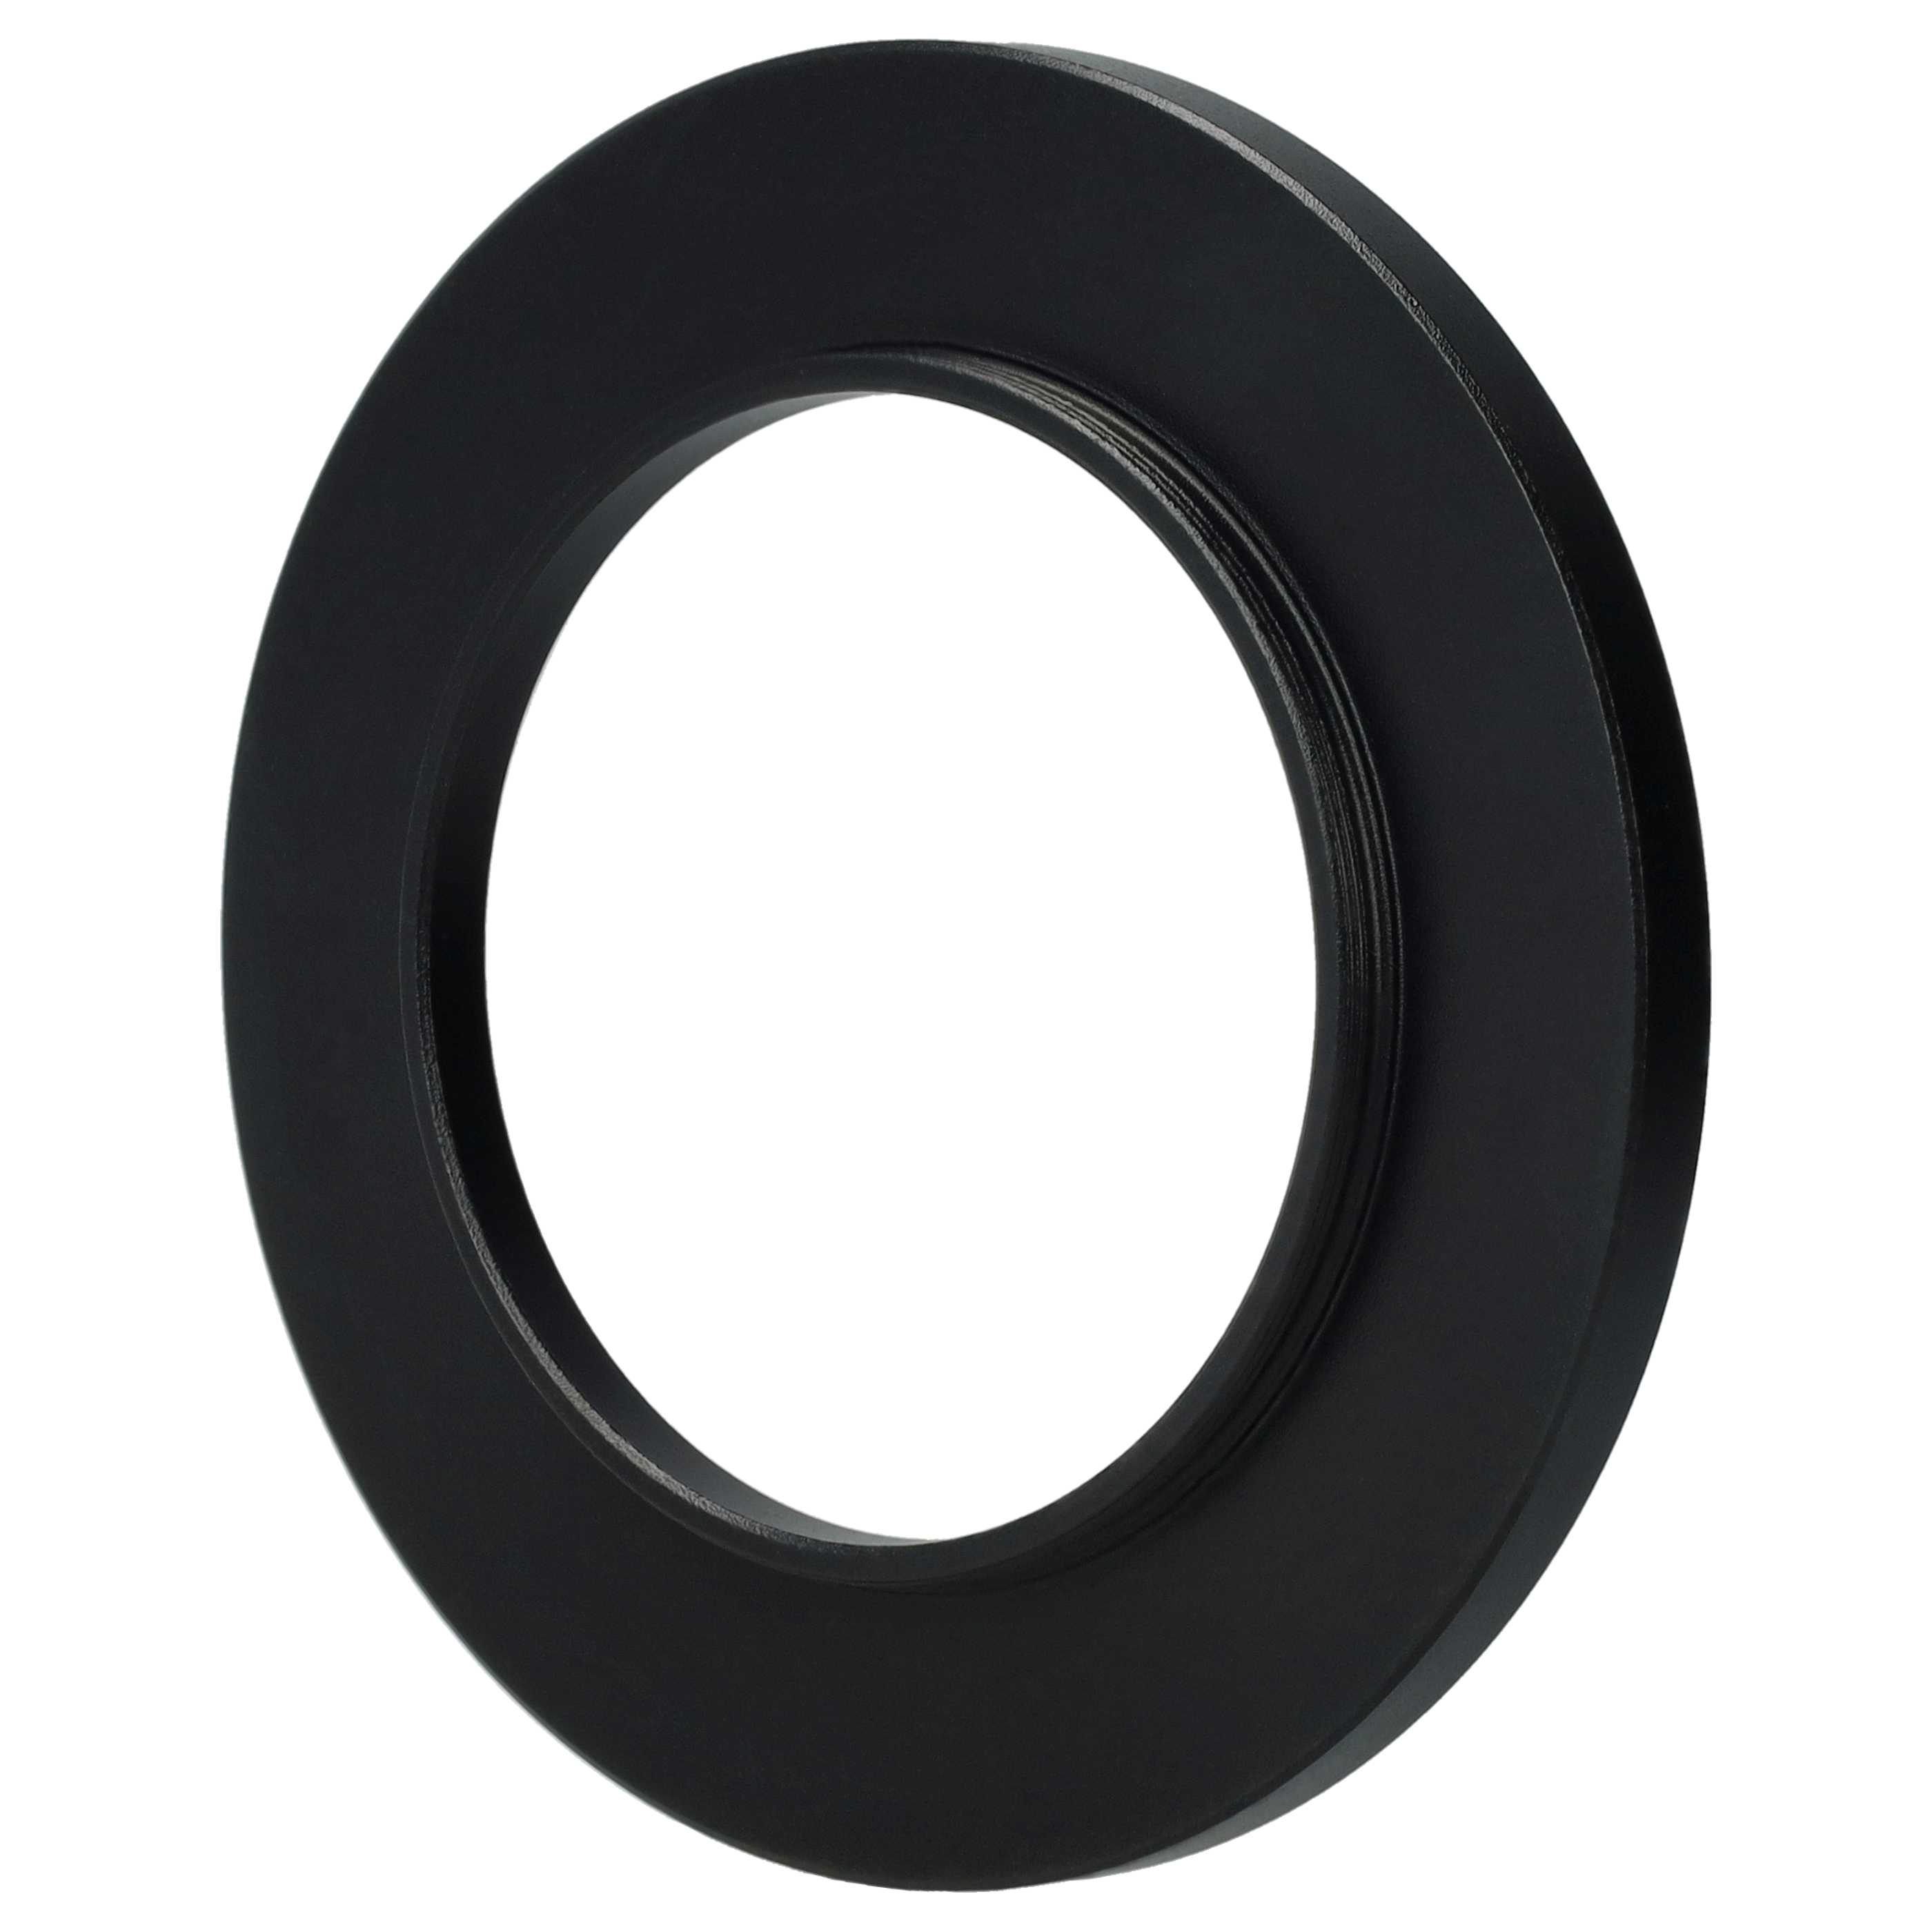 Step-Up-Ring Adapter 40,5 mm auf 58 mm passend für diverse Kamera-Objektive - Filteradapter